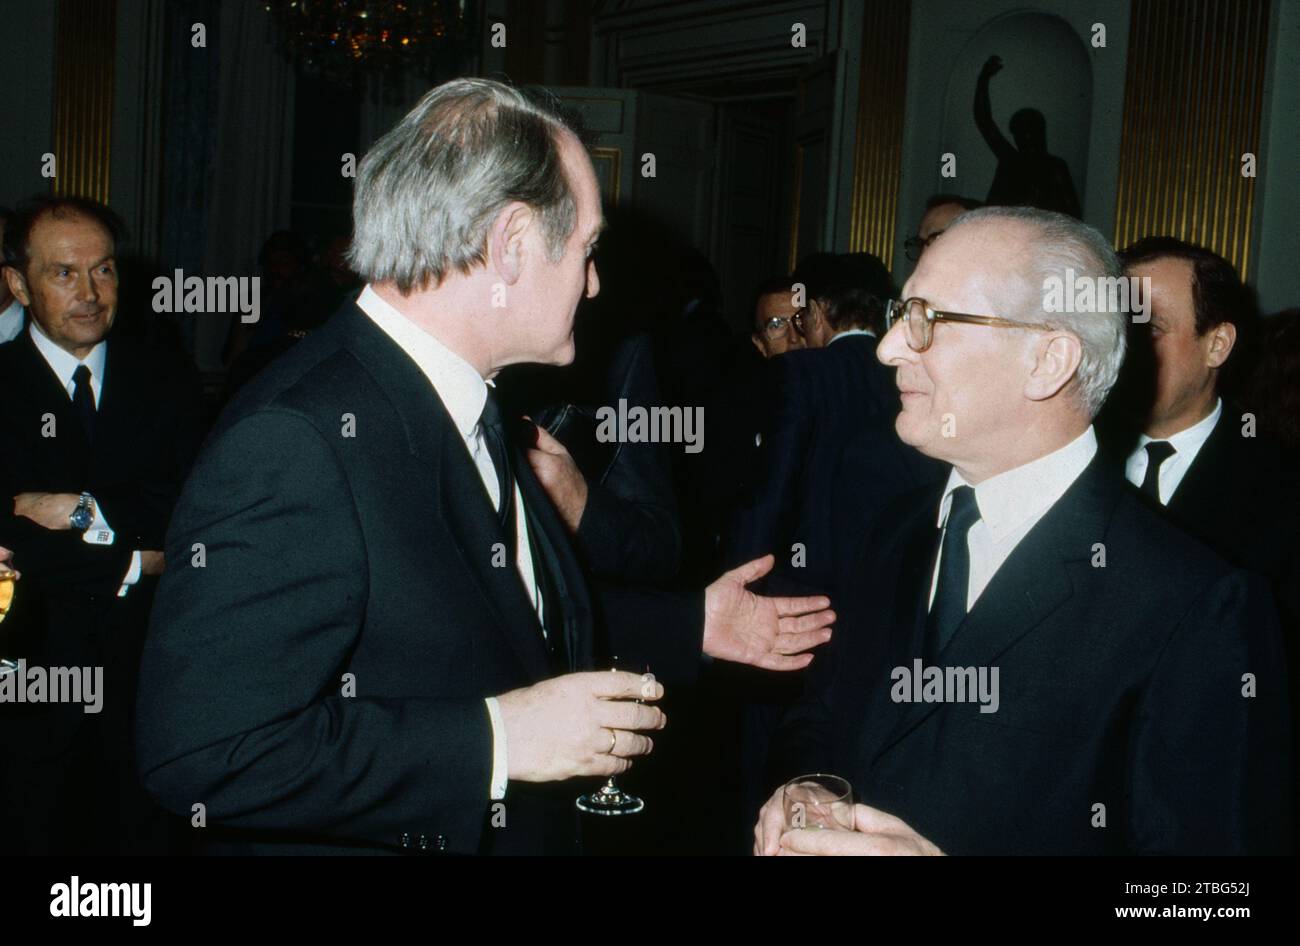 Johannes Rau, NRW Ministerpräsident, im Gespräch mit Erich Honecker, den Staatsratsvorsitzenden der DDR und Generalsekretärs des Zentralkomitees der SED, bei dessen Besuch in Deutschland, 1987. Foto Stock